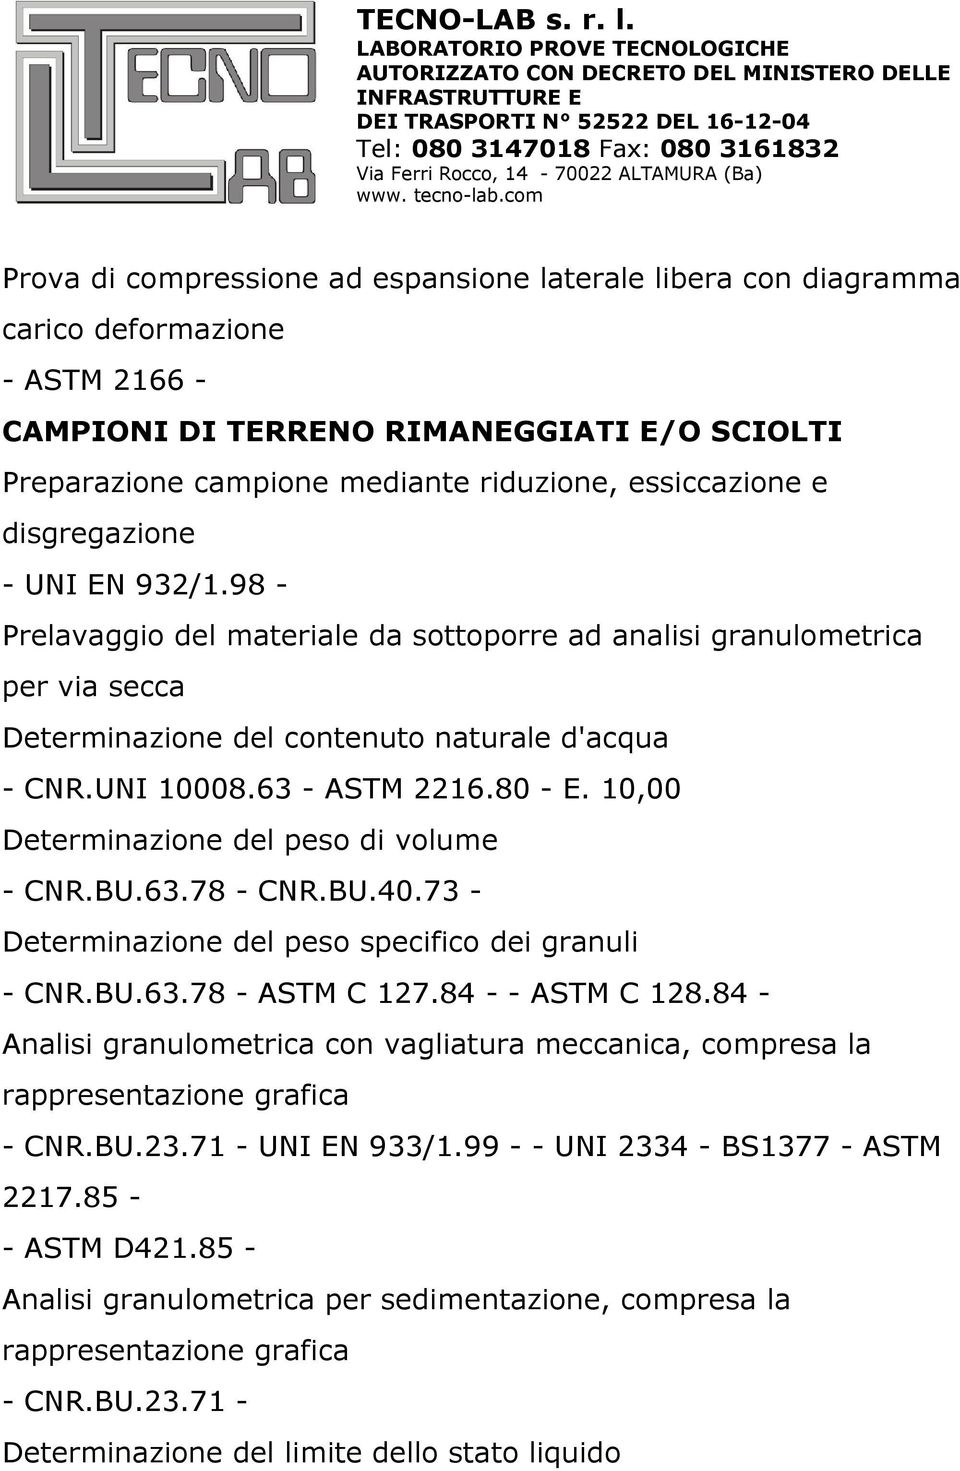 10,00 Determinazione del peso di volume - CNR.BU.63.78 - CNR.BU.40.73 - Determinazione del peso specifico dei granuli - CNR.BU.63.78 - ASTM C 127.84 - - ASTM C 128.